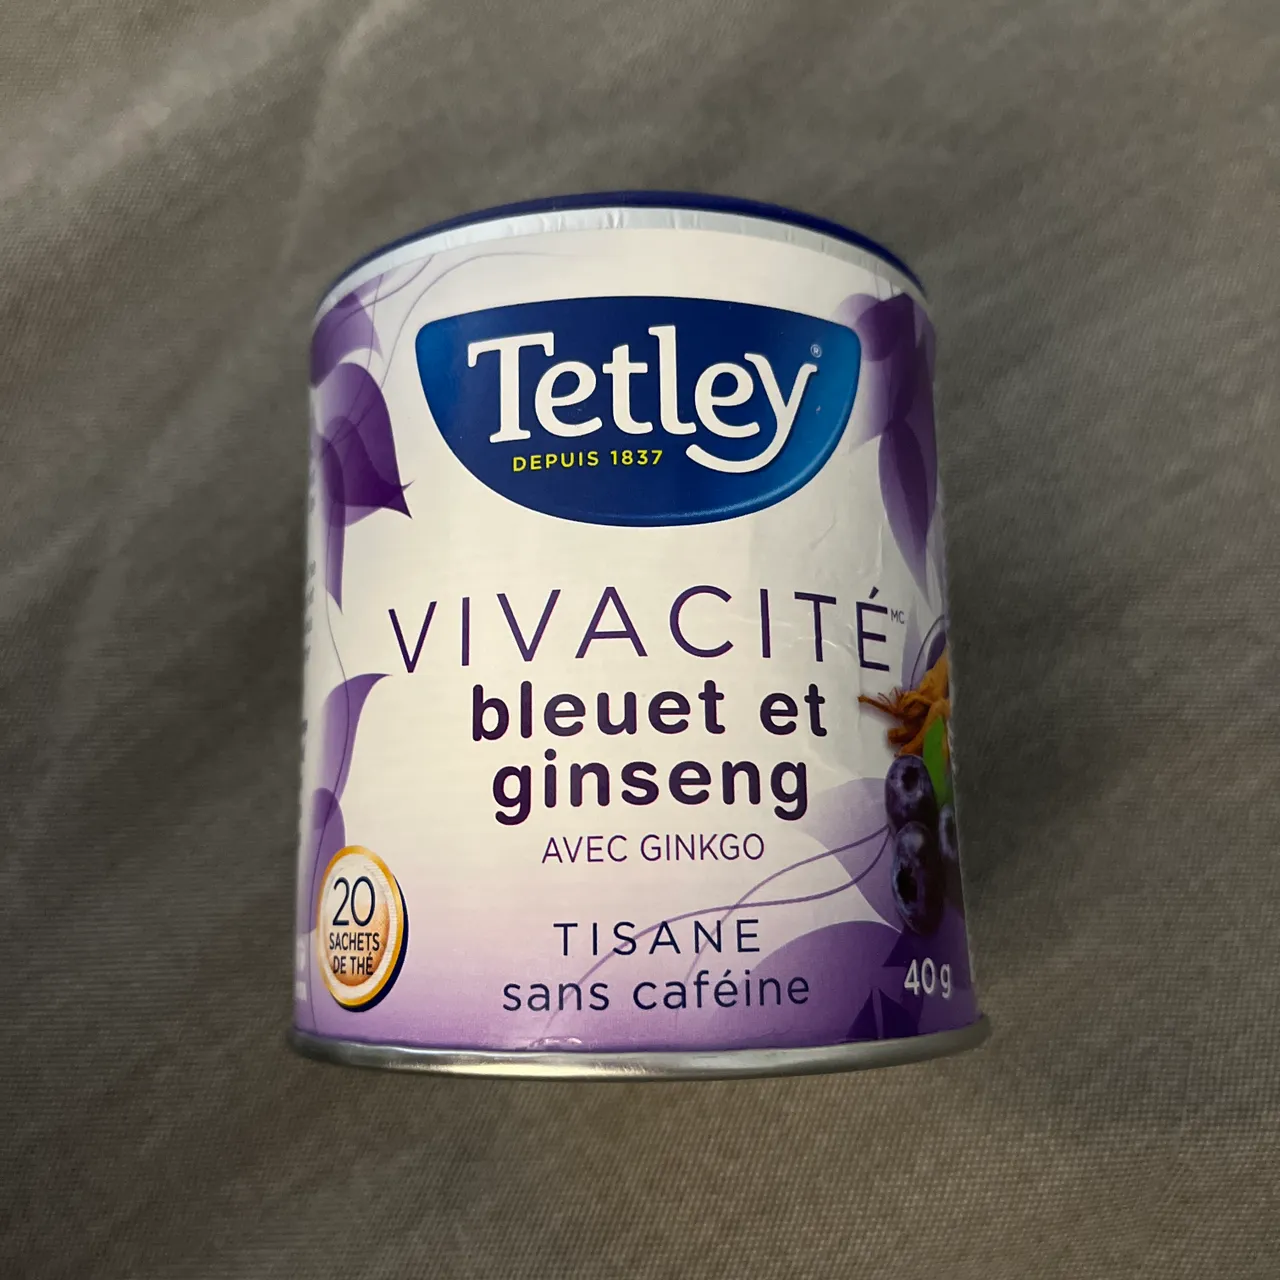 Tetley clarity herbal tea photo 1